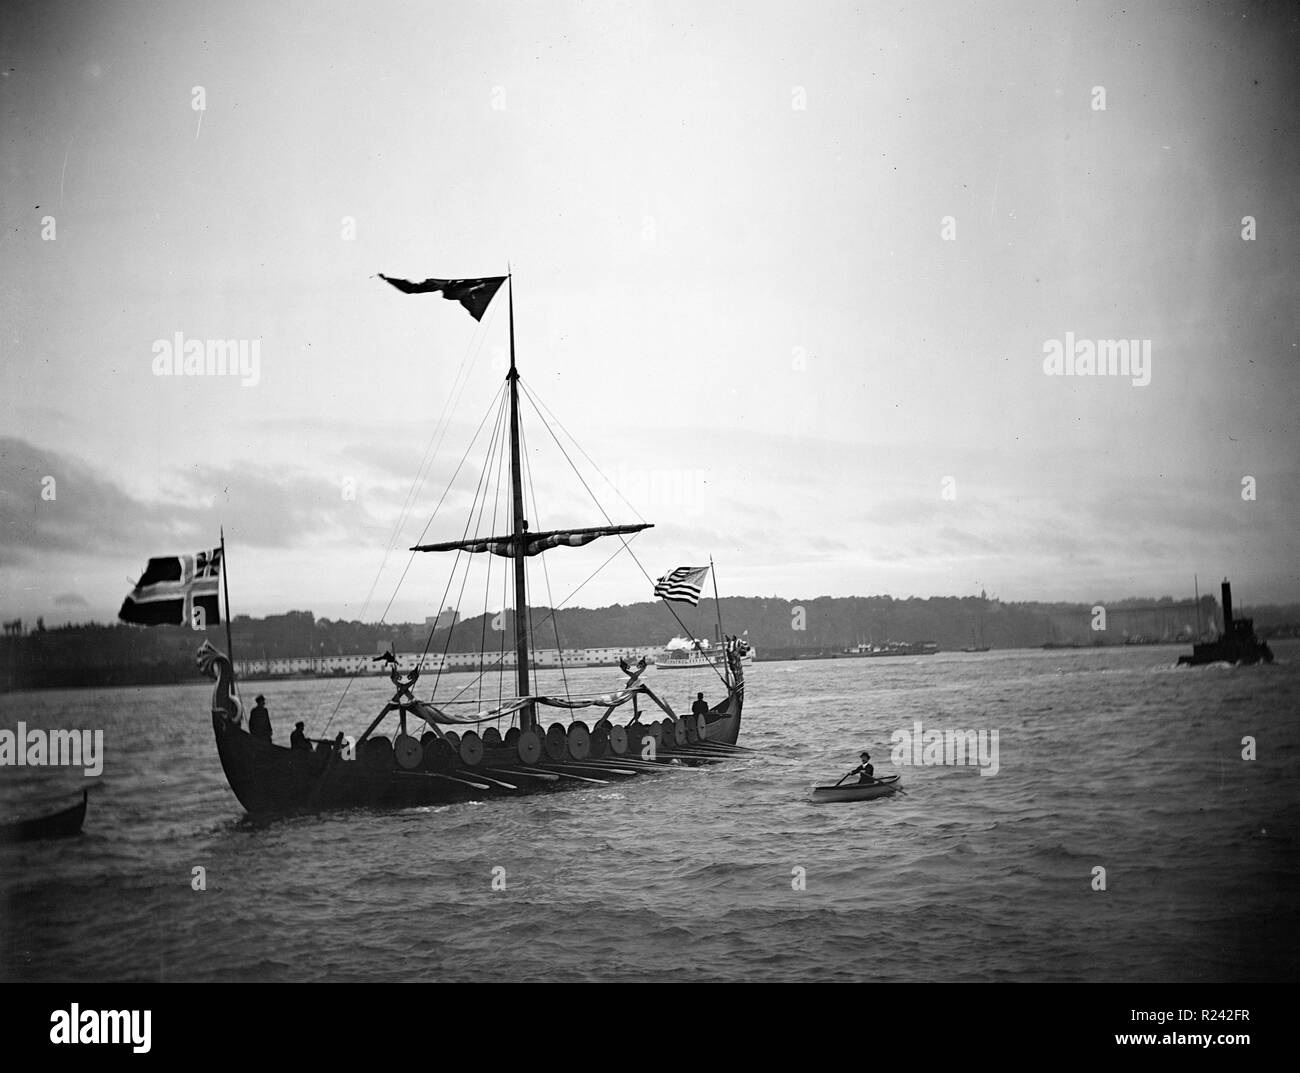 Fotografia di una ricostruzione di una nave vichinga a vela nel porto di Copenhagen. Datata 1933 Foto Stock